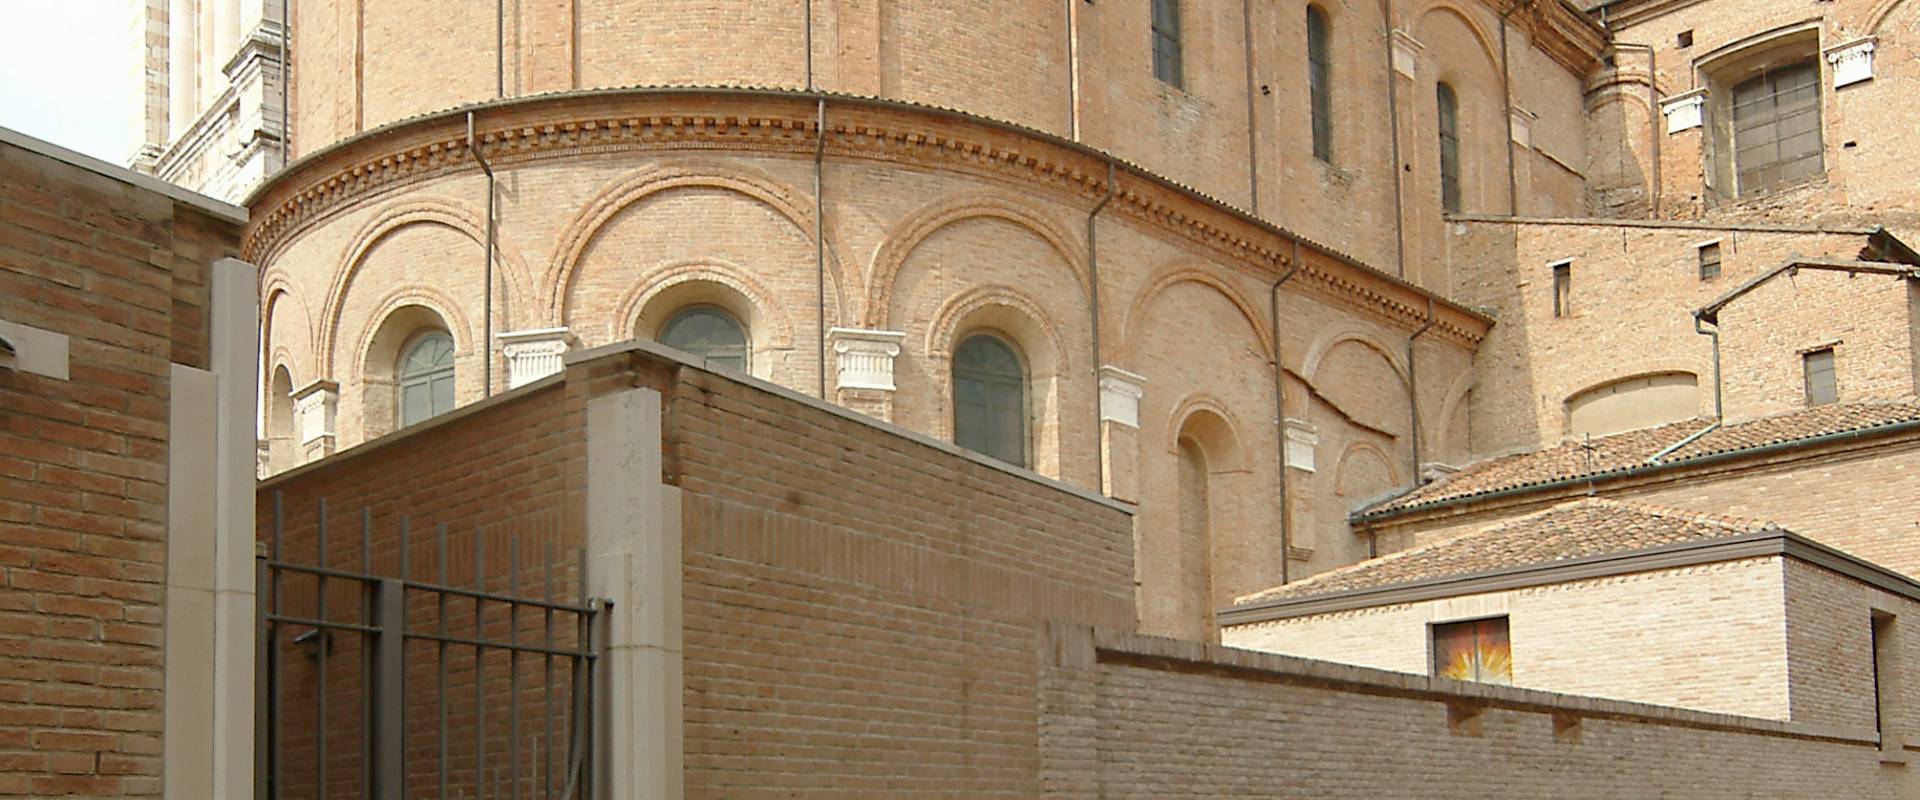 Abside della Cattedrale photo by Baraldi